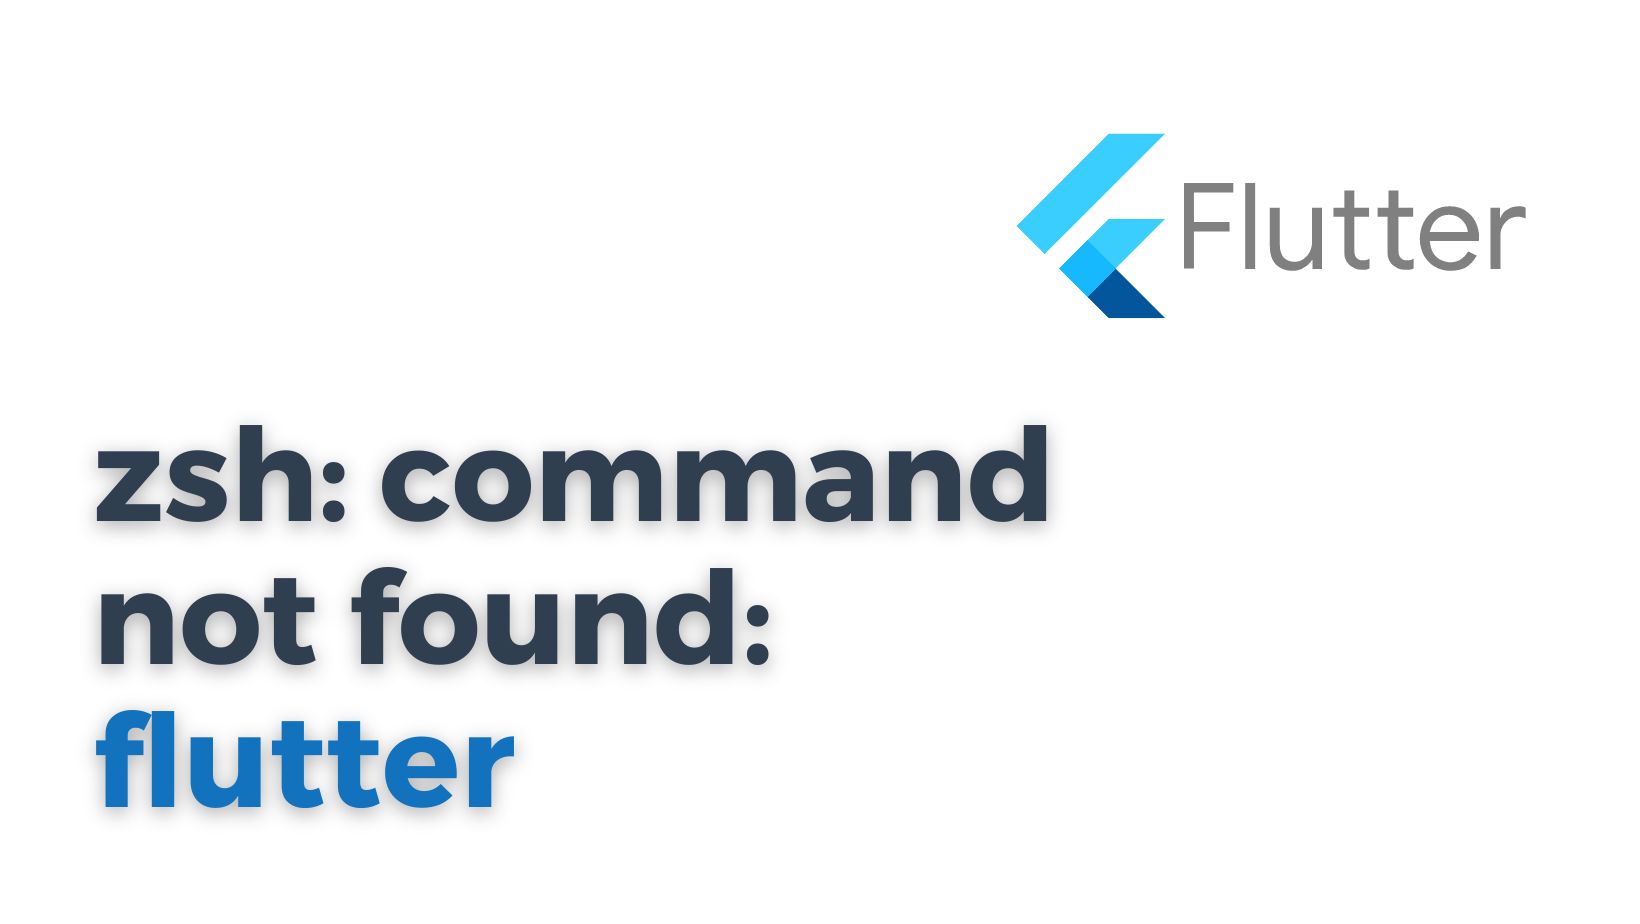 zsh: command not found: flutter